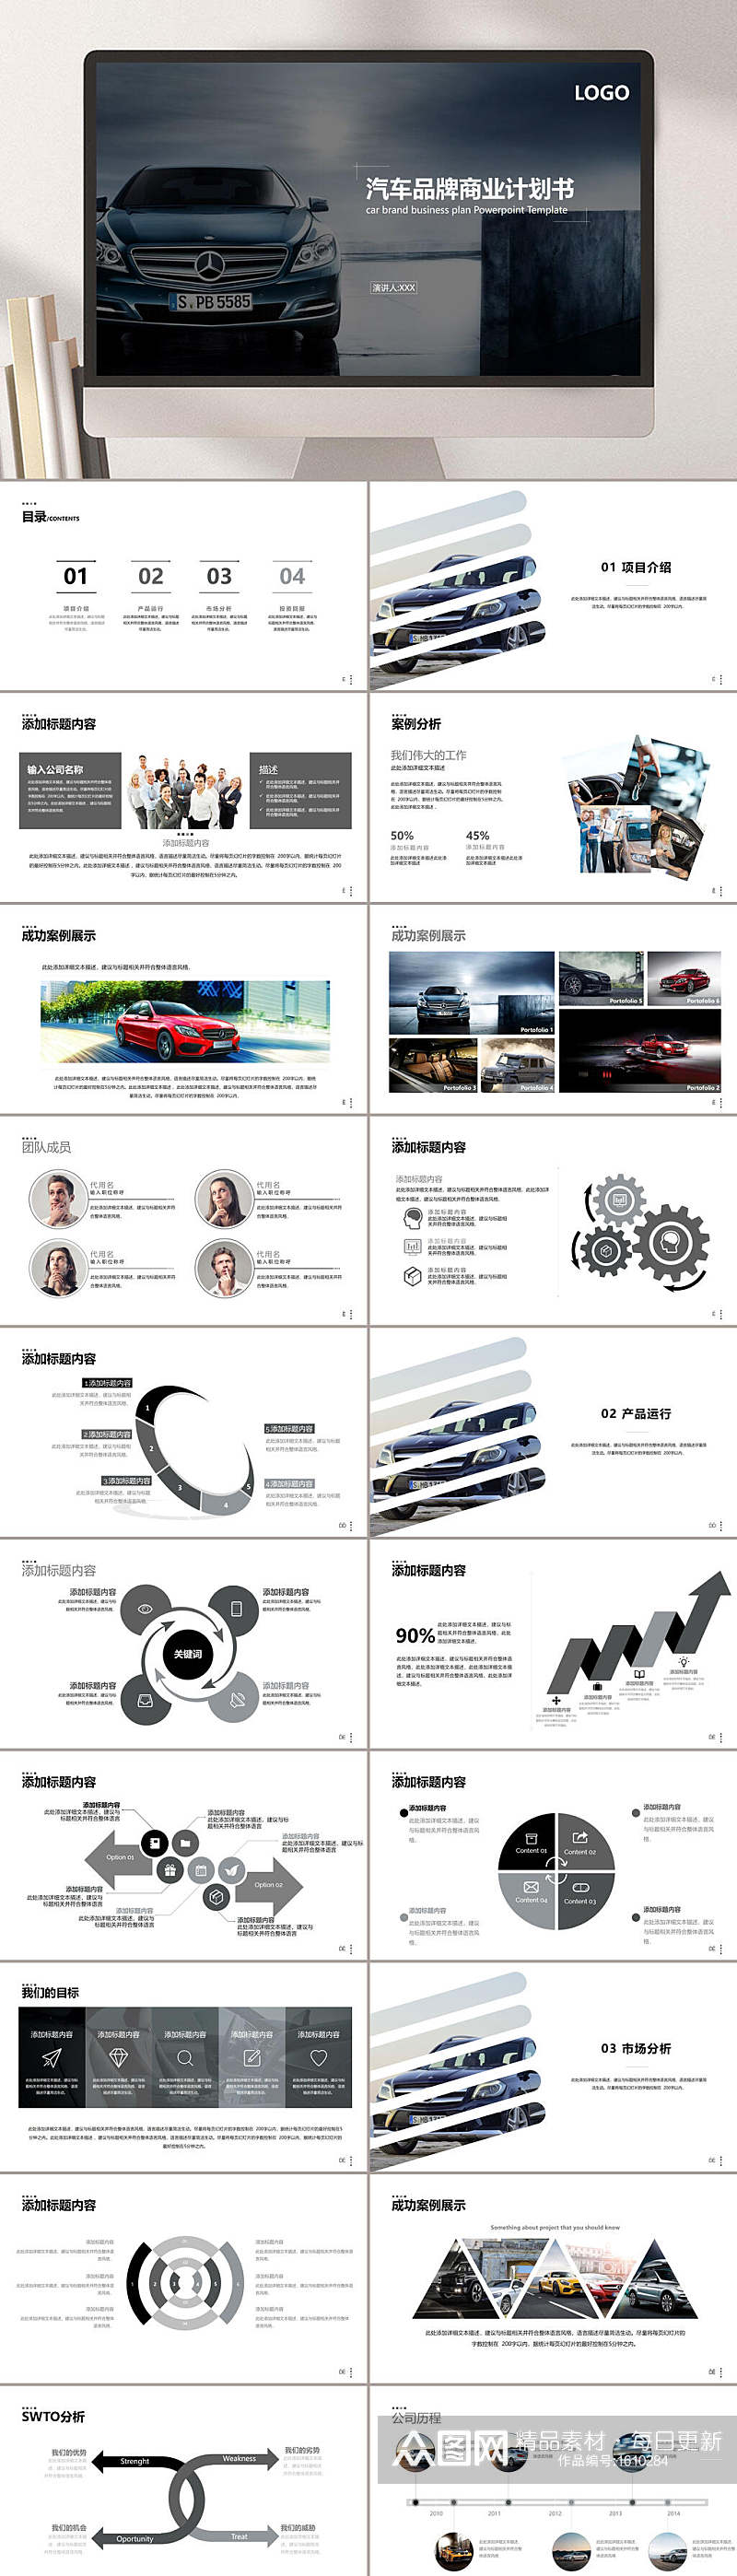 大气时尚汽车行业营销PPT模板素材